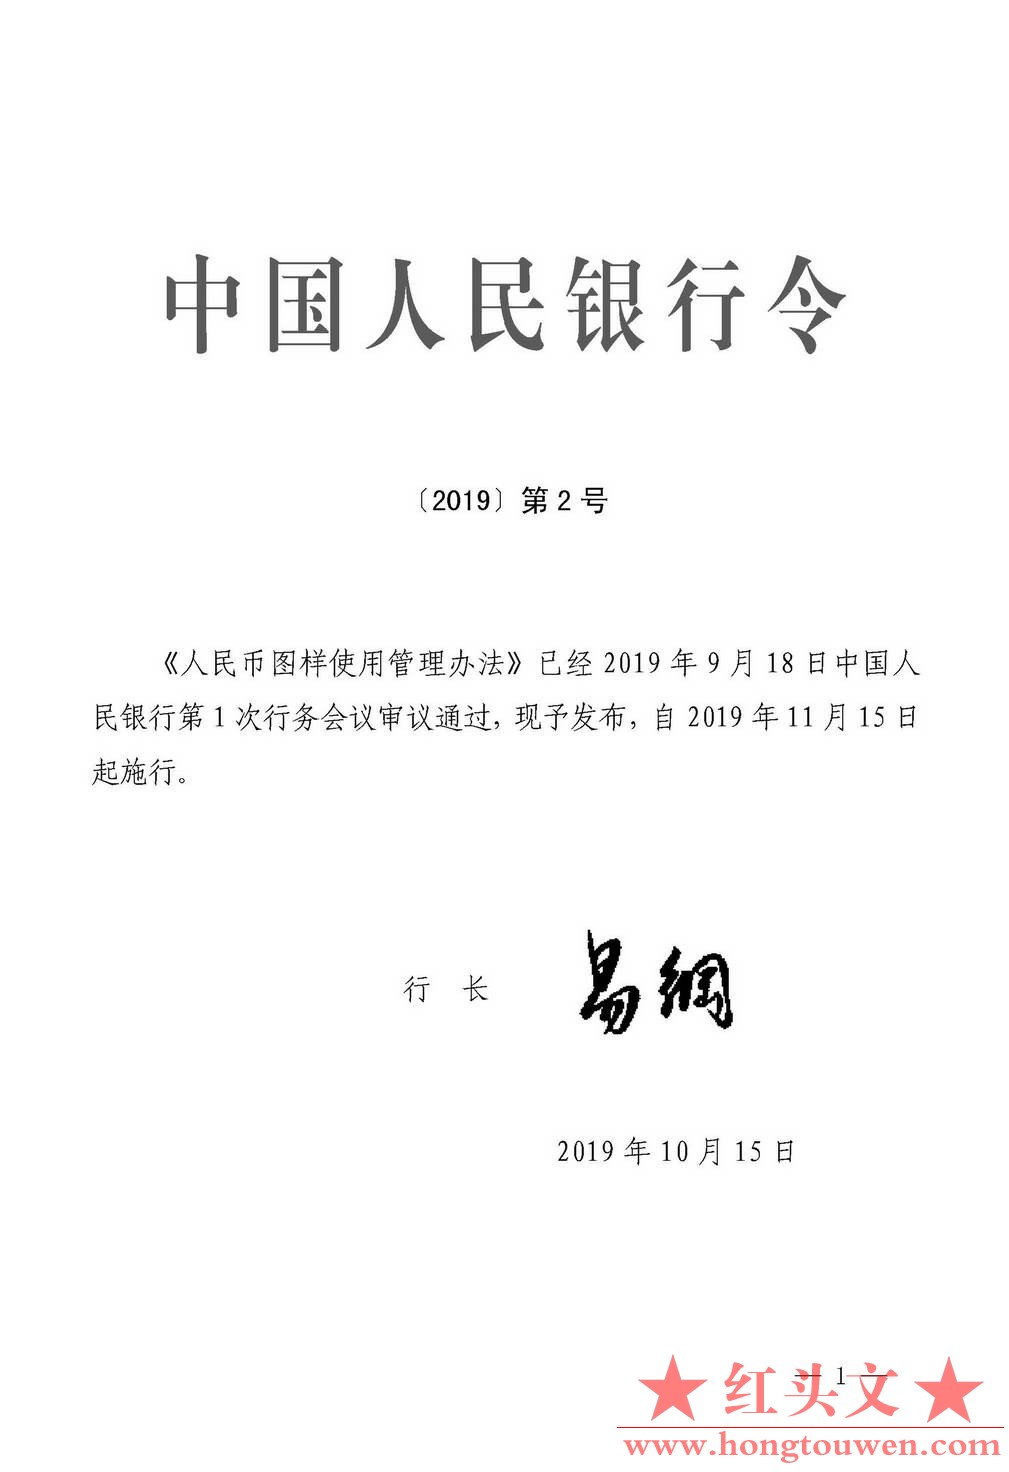 中国人民银行令[2019]第2号-人民币图样使用管理办法（2019年版）_页面_1_图像_0001.jp.jpg